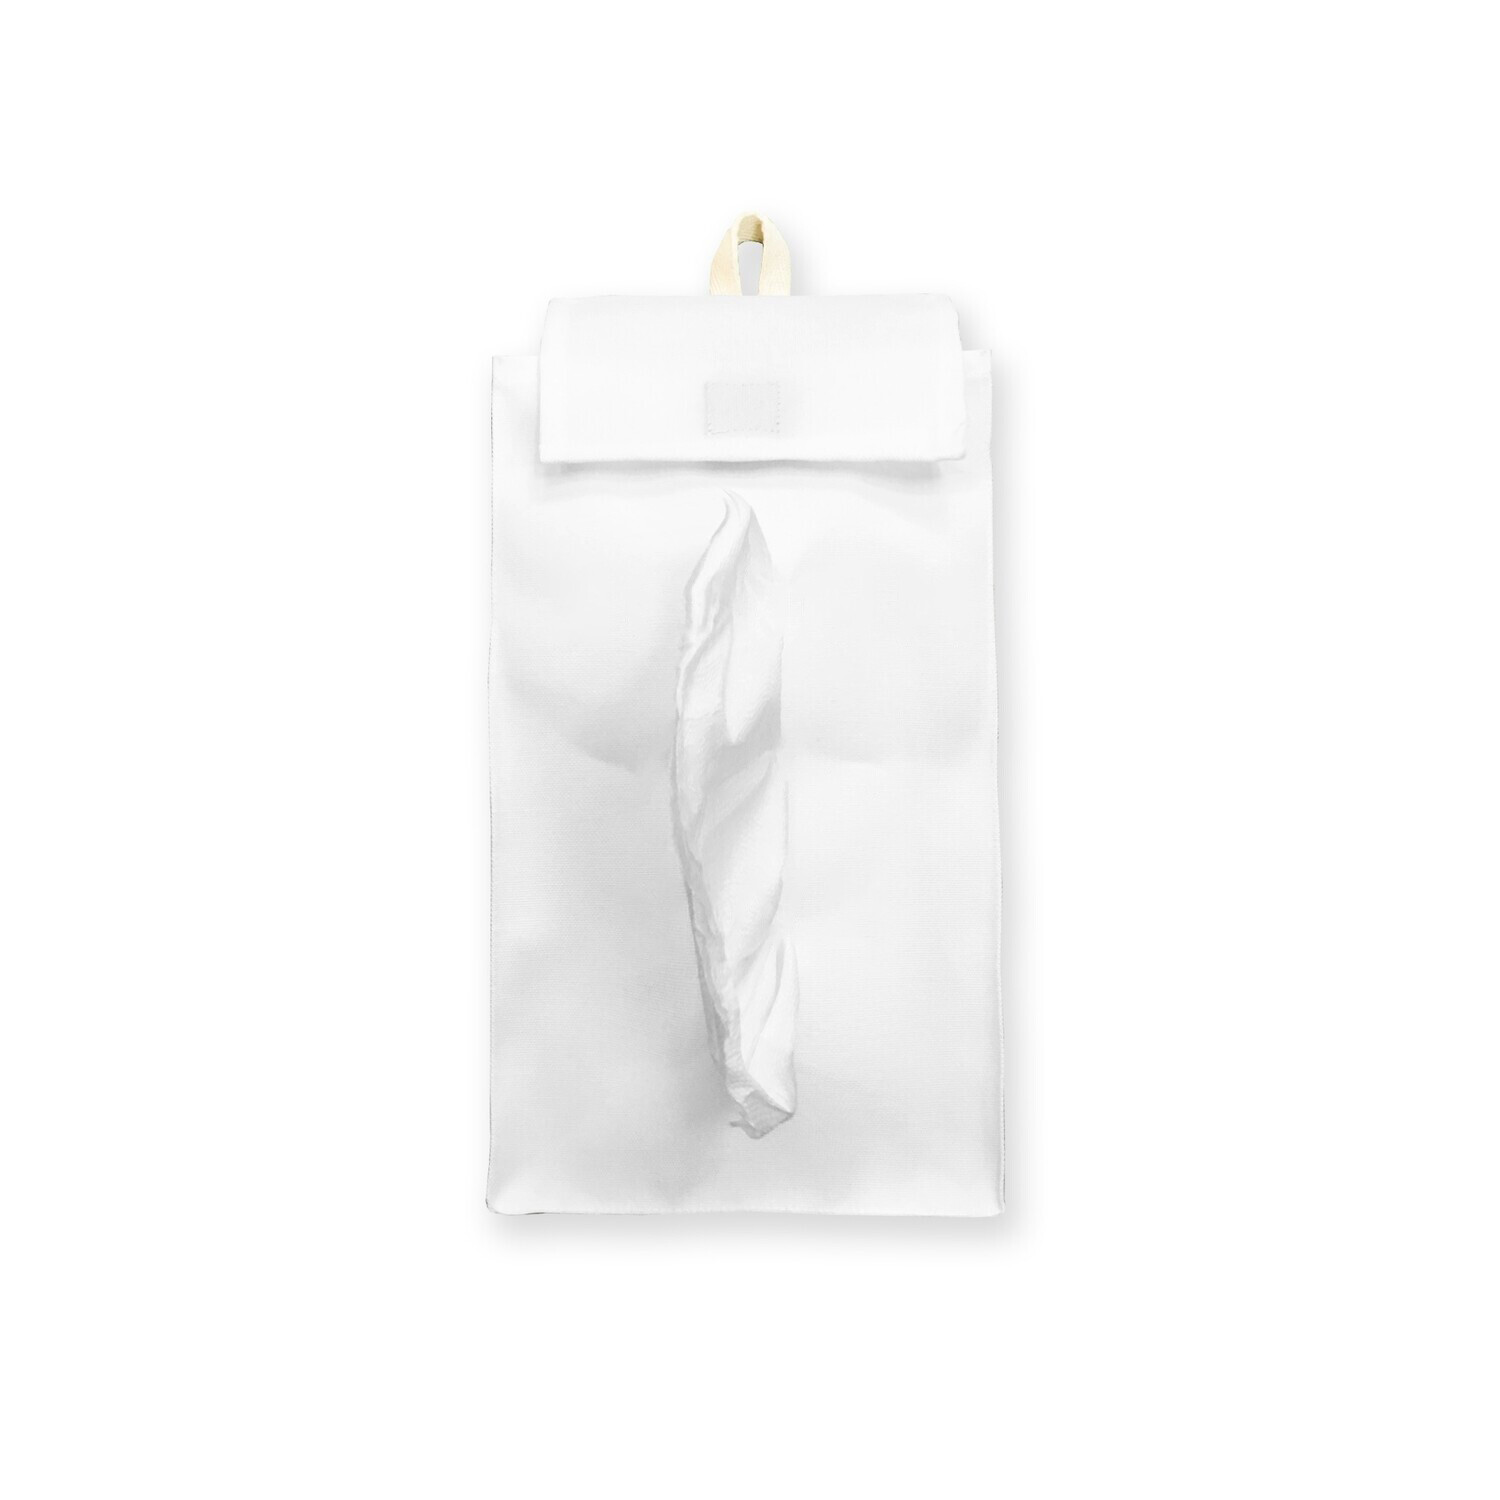 客製 滿版 印花 掛式 帶蓋 面紙套 紙巾袋 Hanging tissue cover